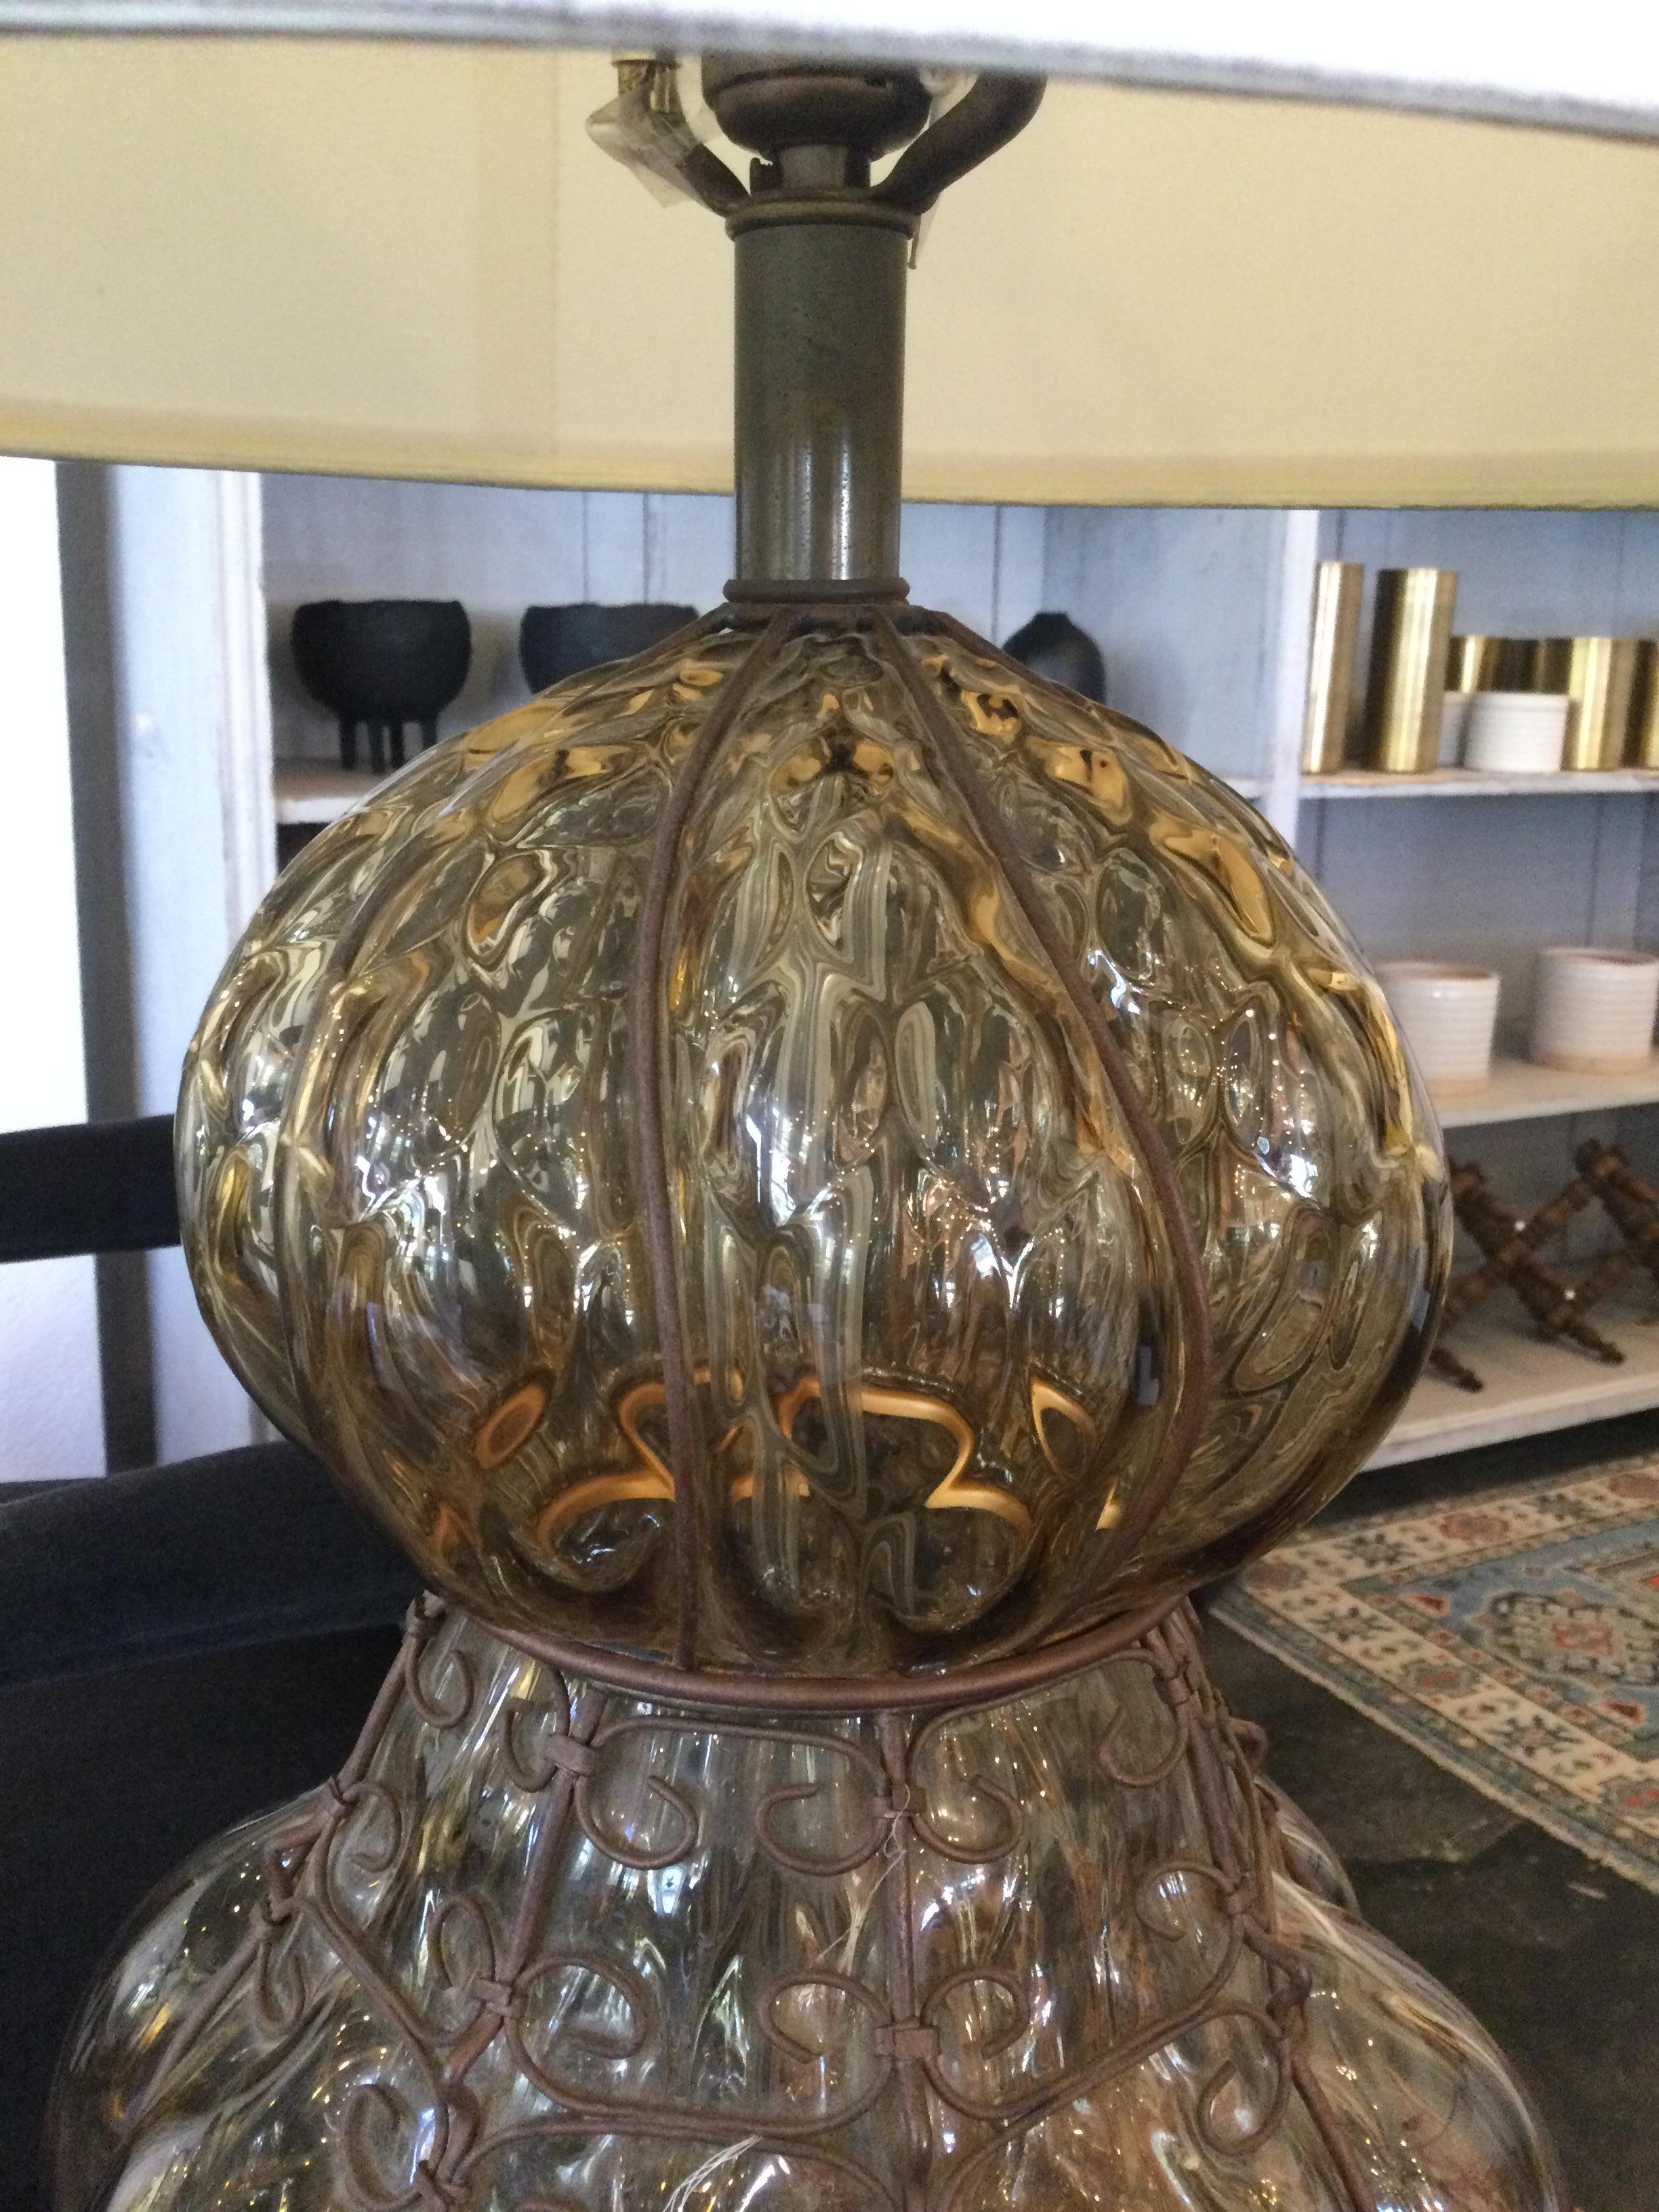 Eine seltene und schöne Murano Lampe mit Bronzesockel.

Murano-Glas wird auf der Insel Murano hergestellt, die in der Stadt Venedig in Norditalien liegt. Dieses Glas wird aus Kieselsäure, Soda, Kalk und Kalium hergestellt, die in einem speziellen